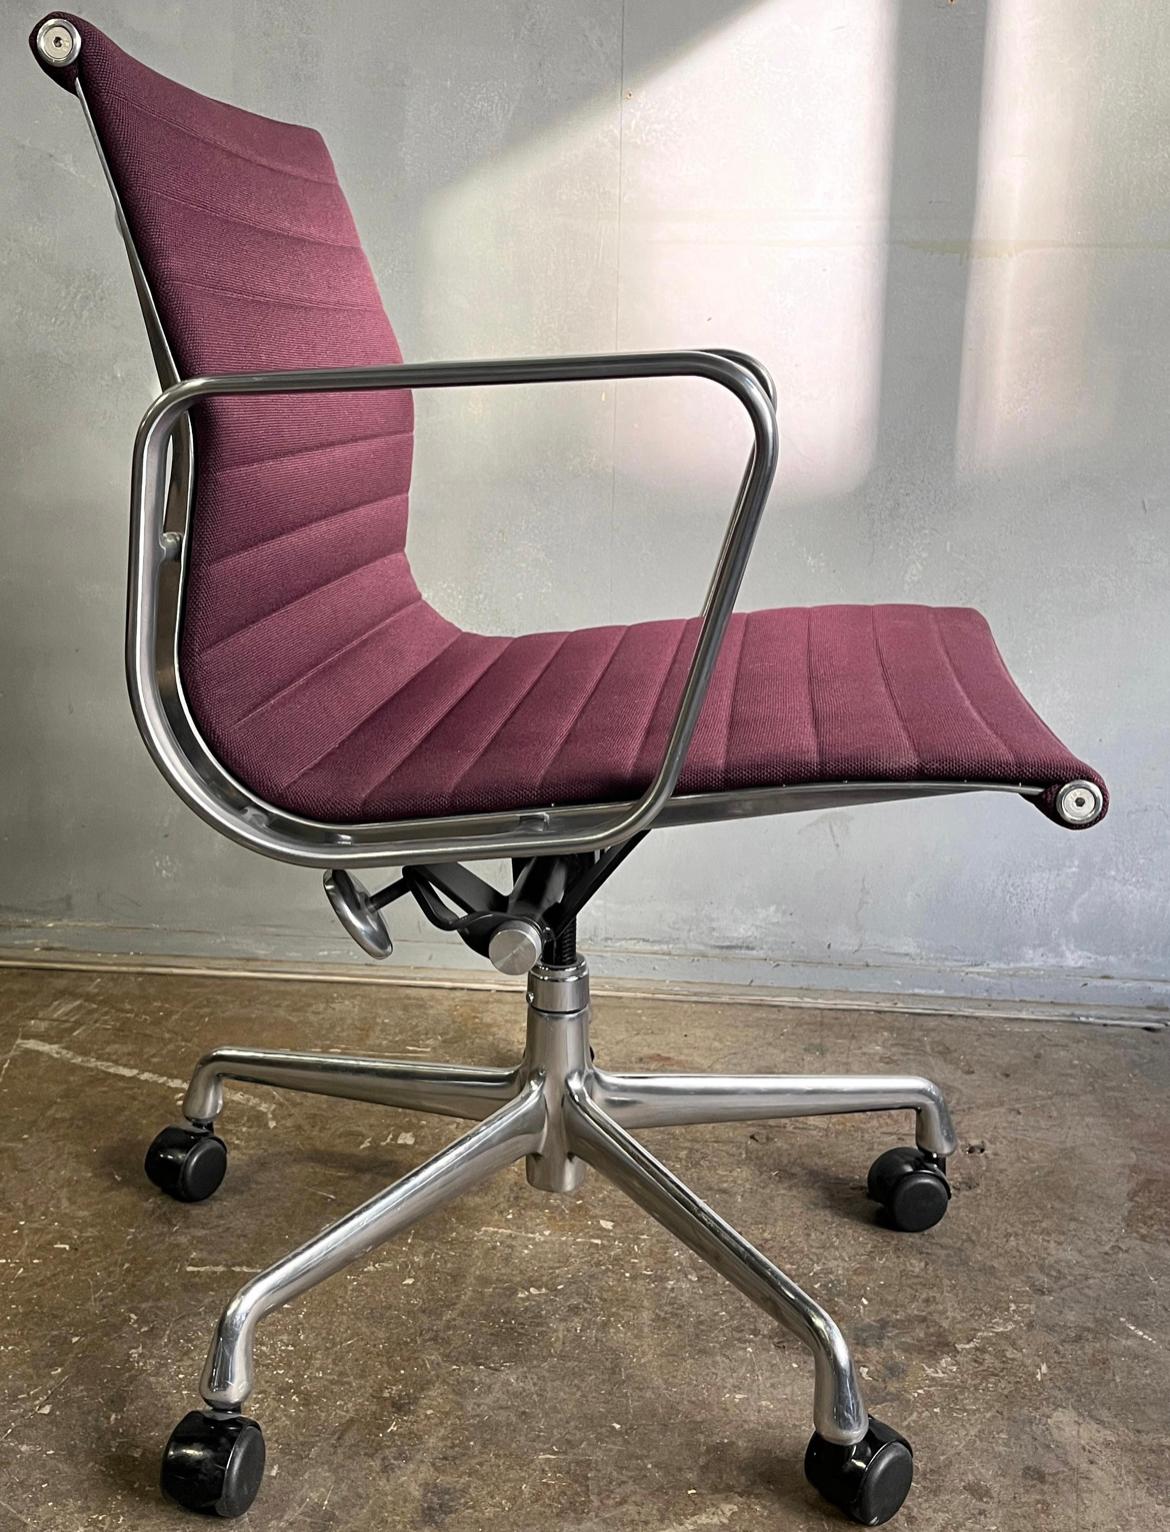 Wir bieten Ihnen diese Eames Aluminum Group Stühle an, die mit wunderschönem lila Stoff bezogen sind. Eleganz und Komfort zeichnen diesen kultigen Stuhl aus. Die Polsterung ist in wunderbarem Zustand mit den Armen mit einigen kleinen Schrammen und